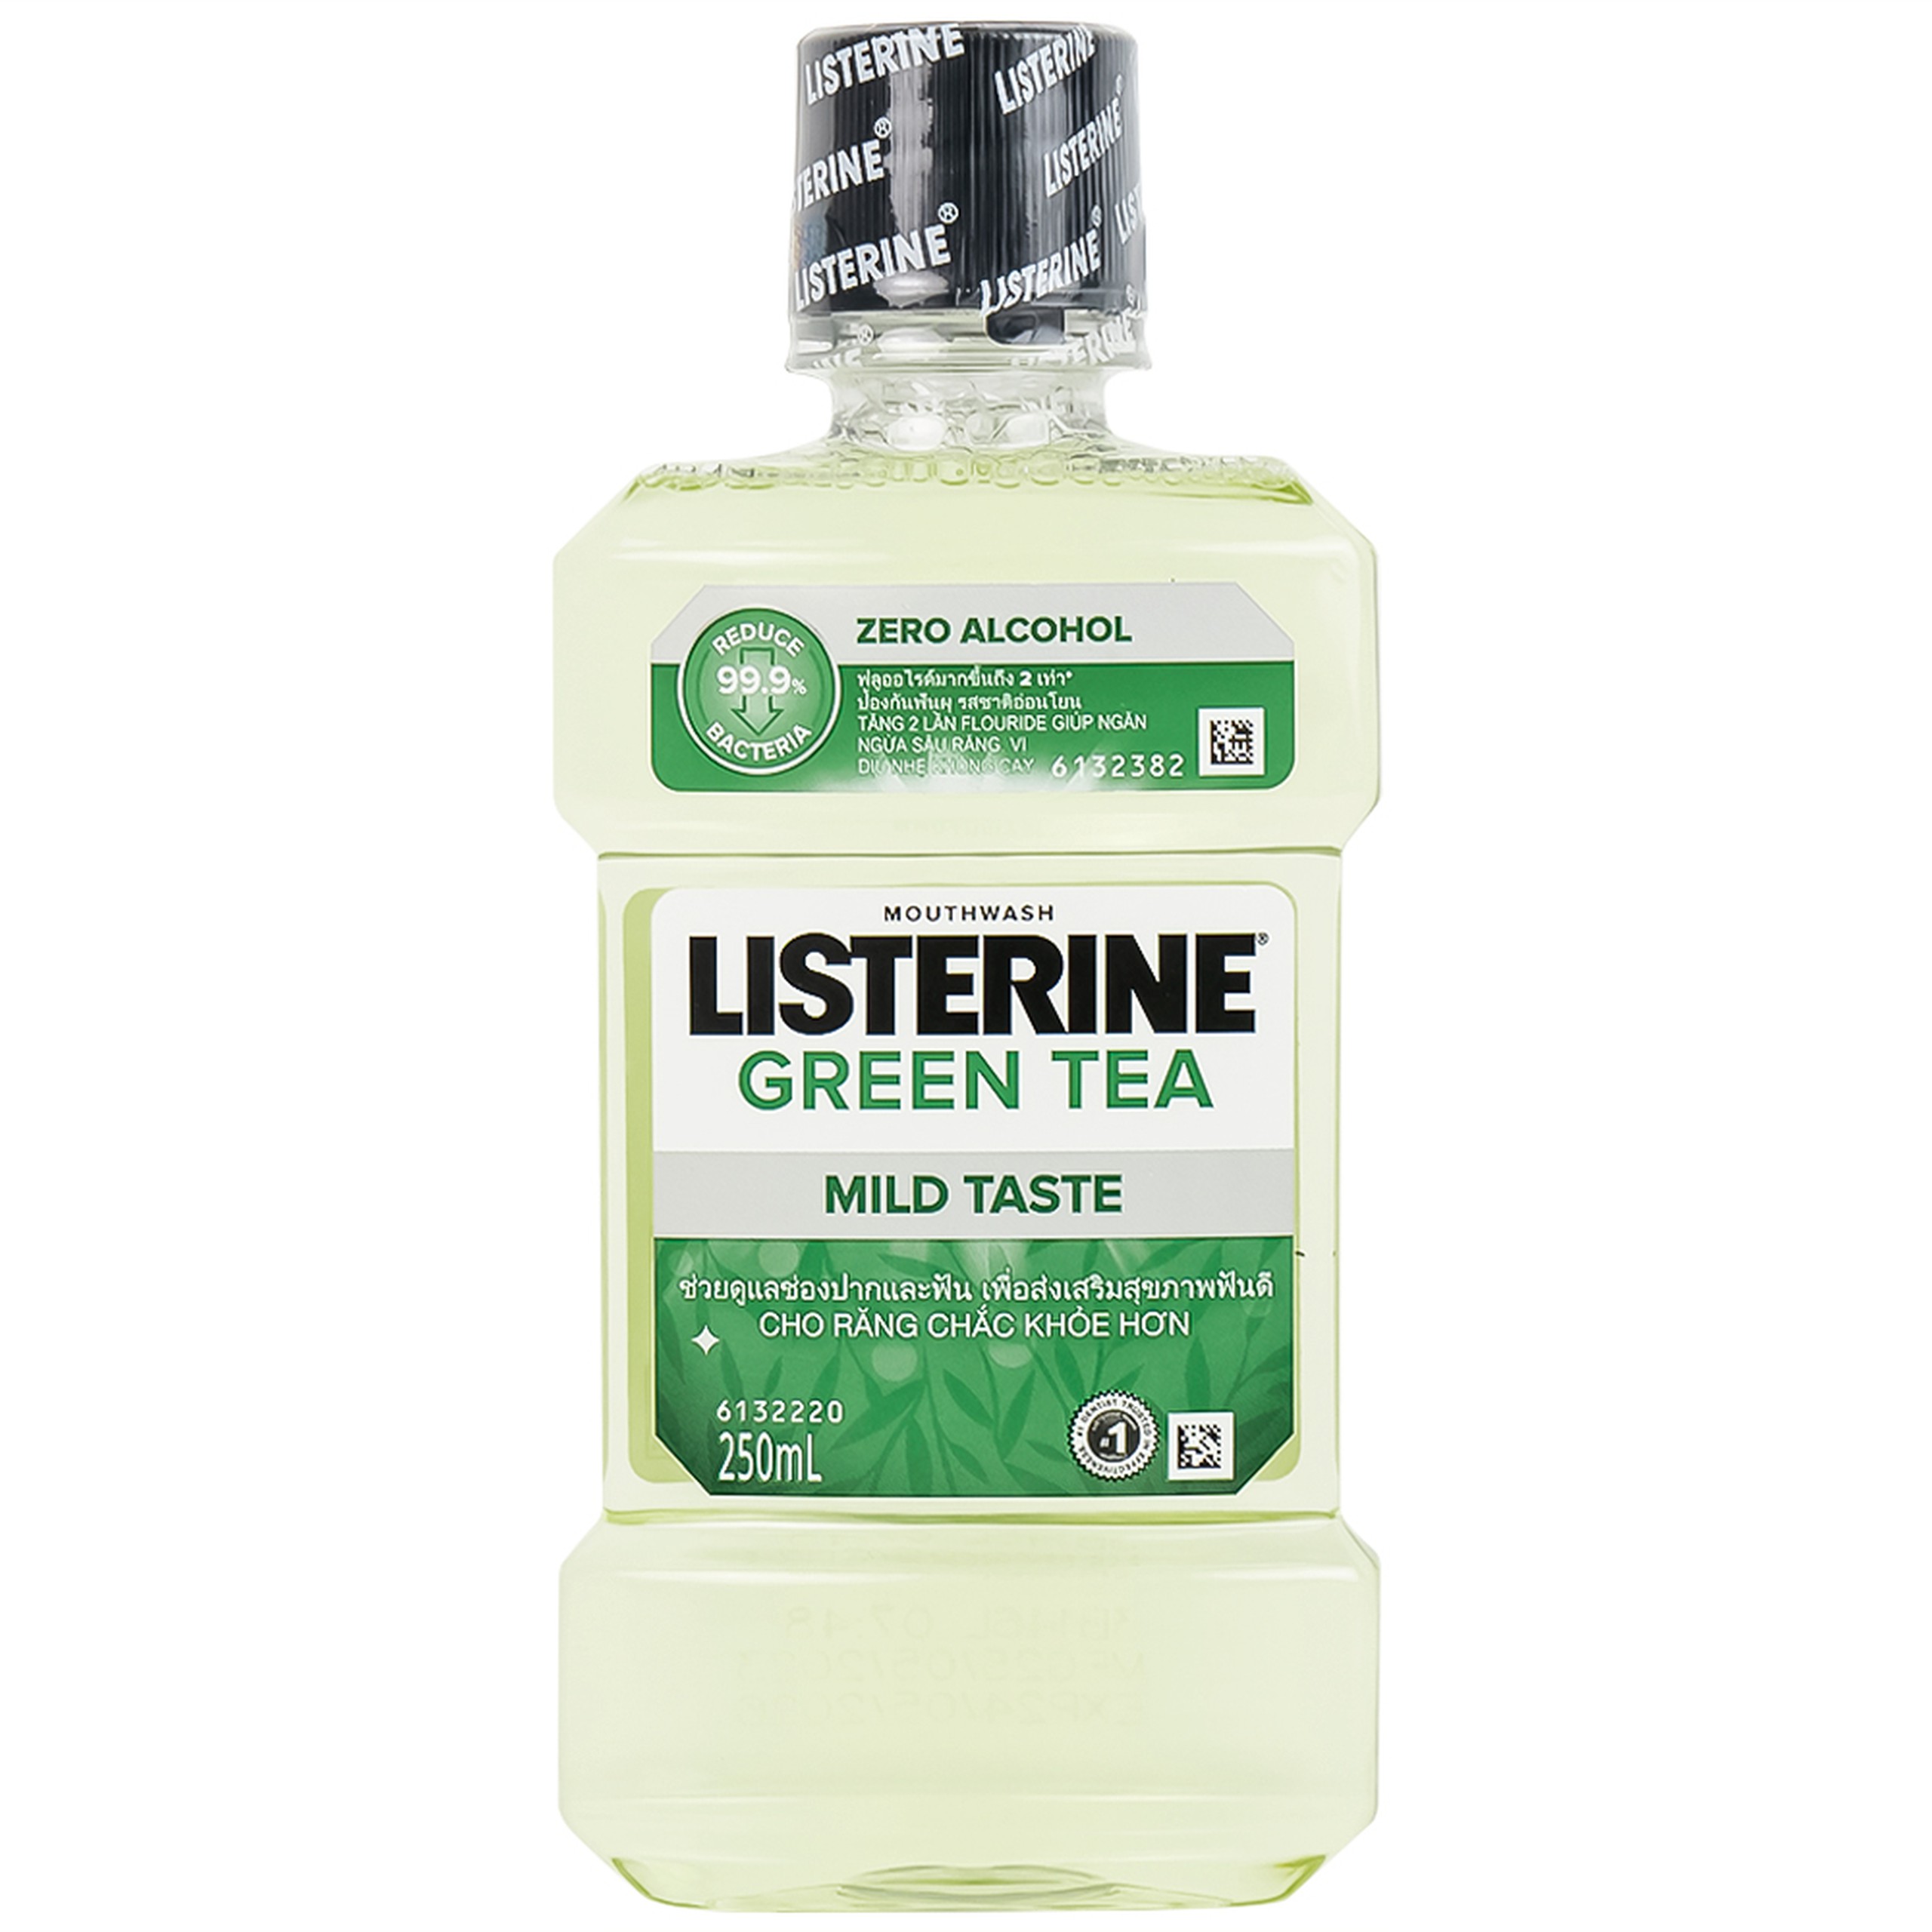 Nước súc miệng Listerine Green Tea bảo vệ răng miệng suốt 24 giờ (250ml)